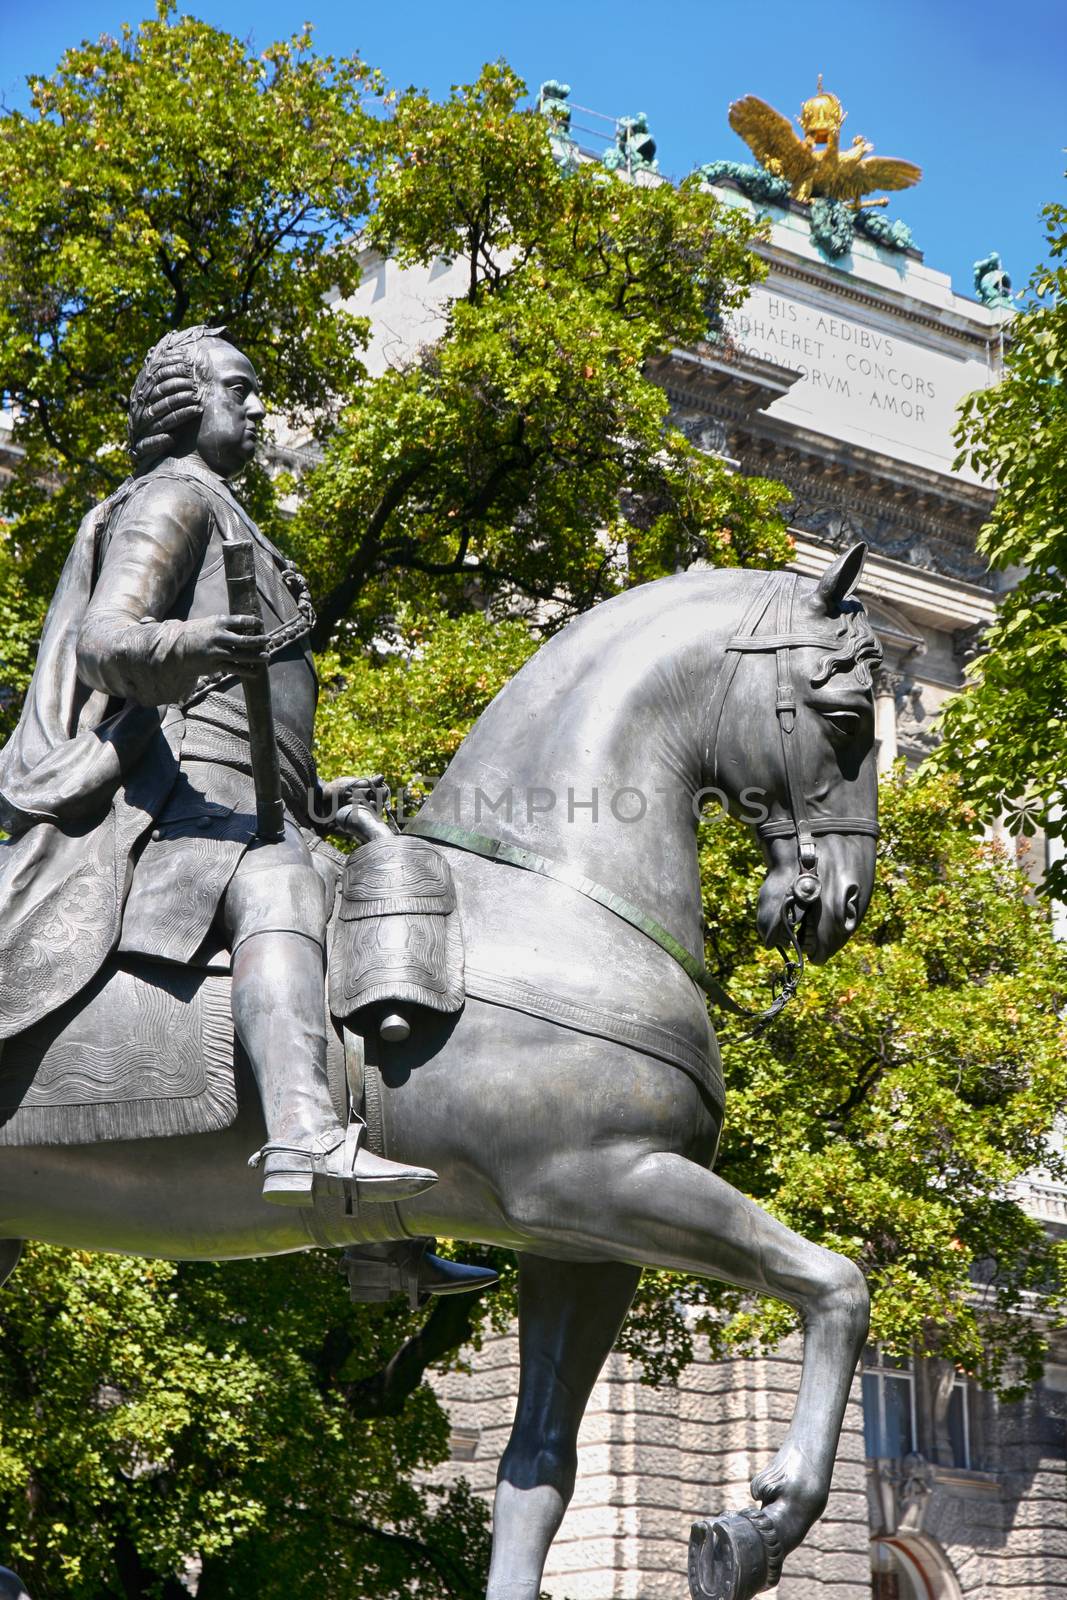 Statue of Kaiser Franz I. Stephan von Lothringen in Vienna, Aust by vladacanon